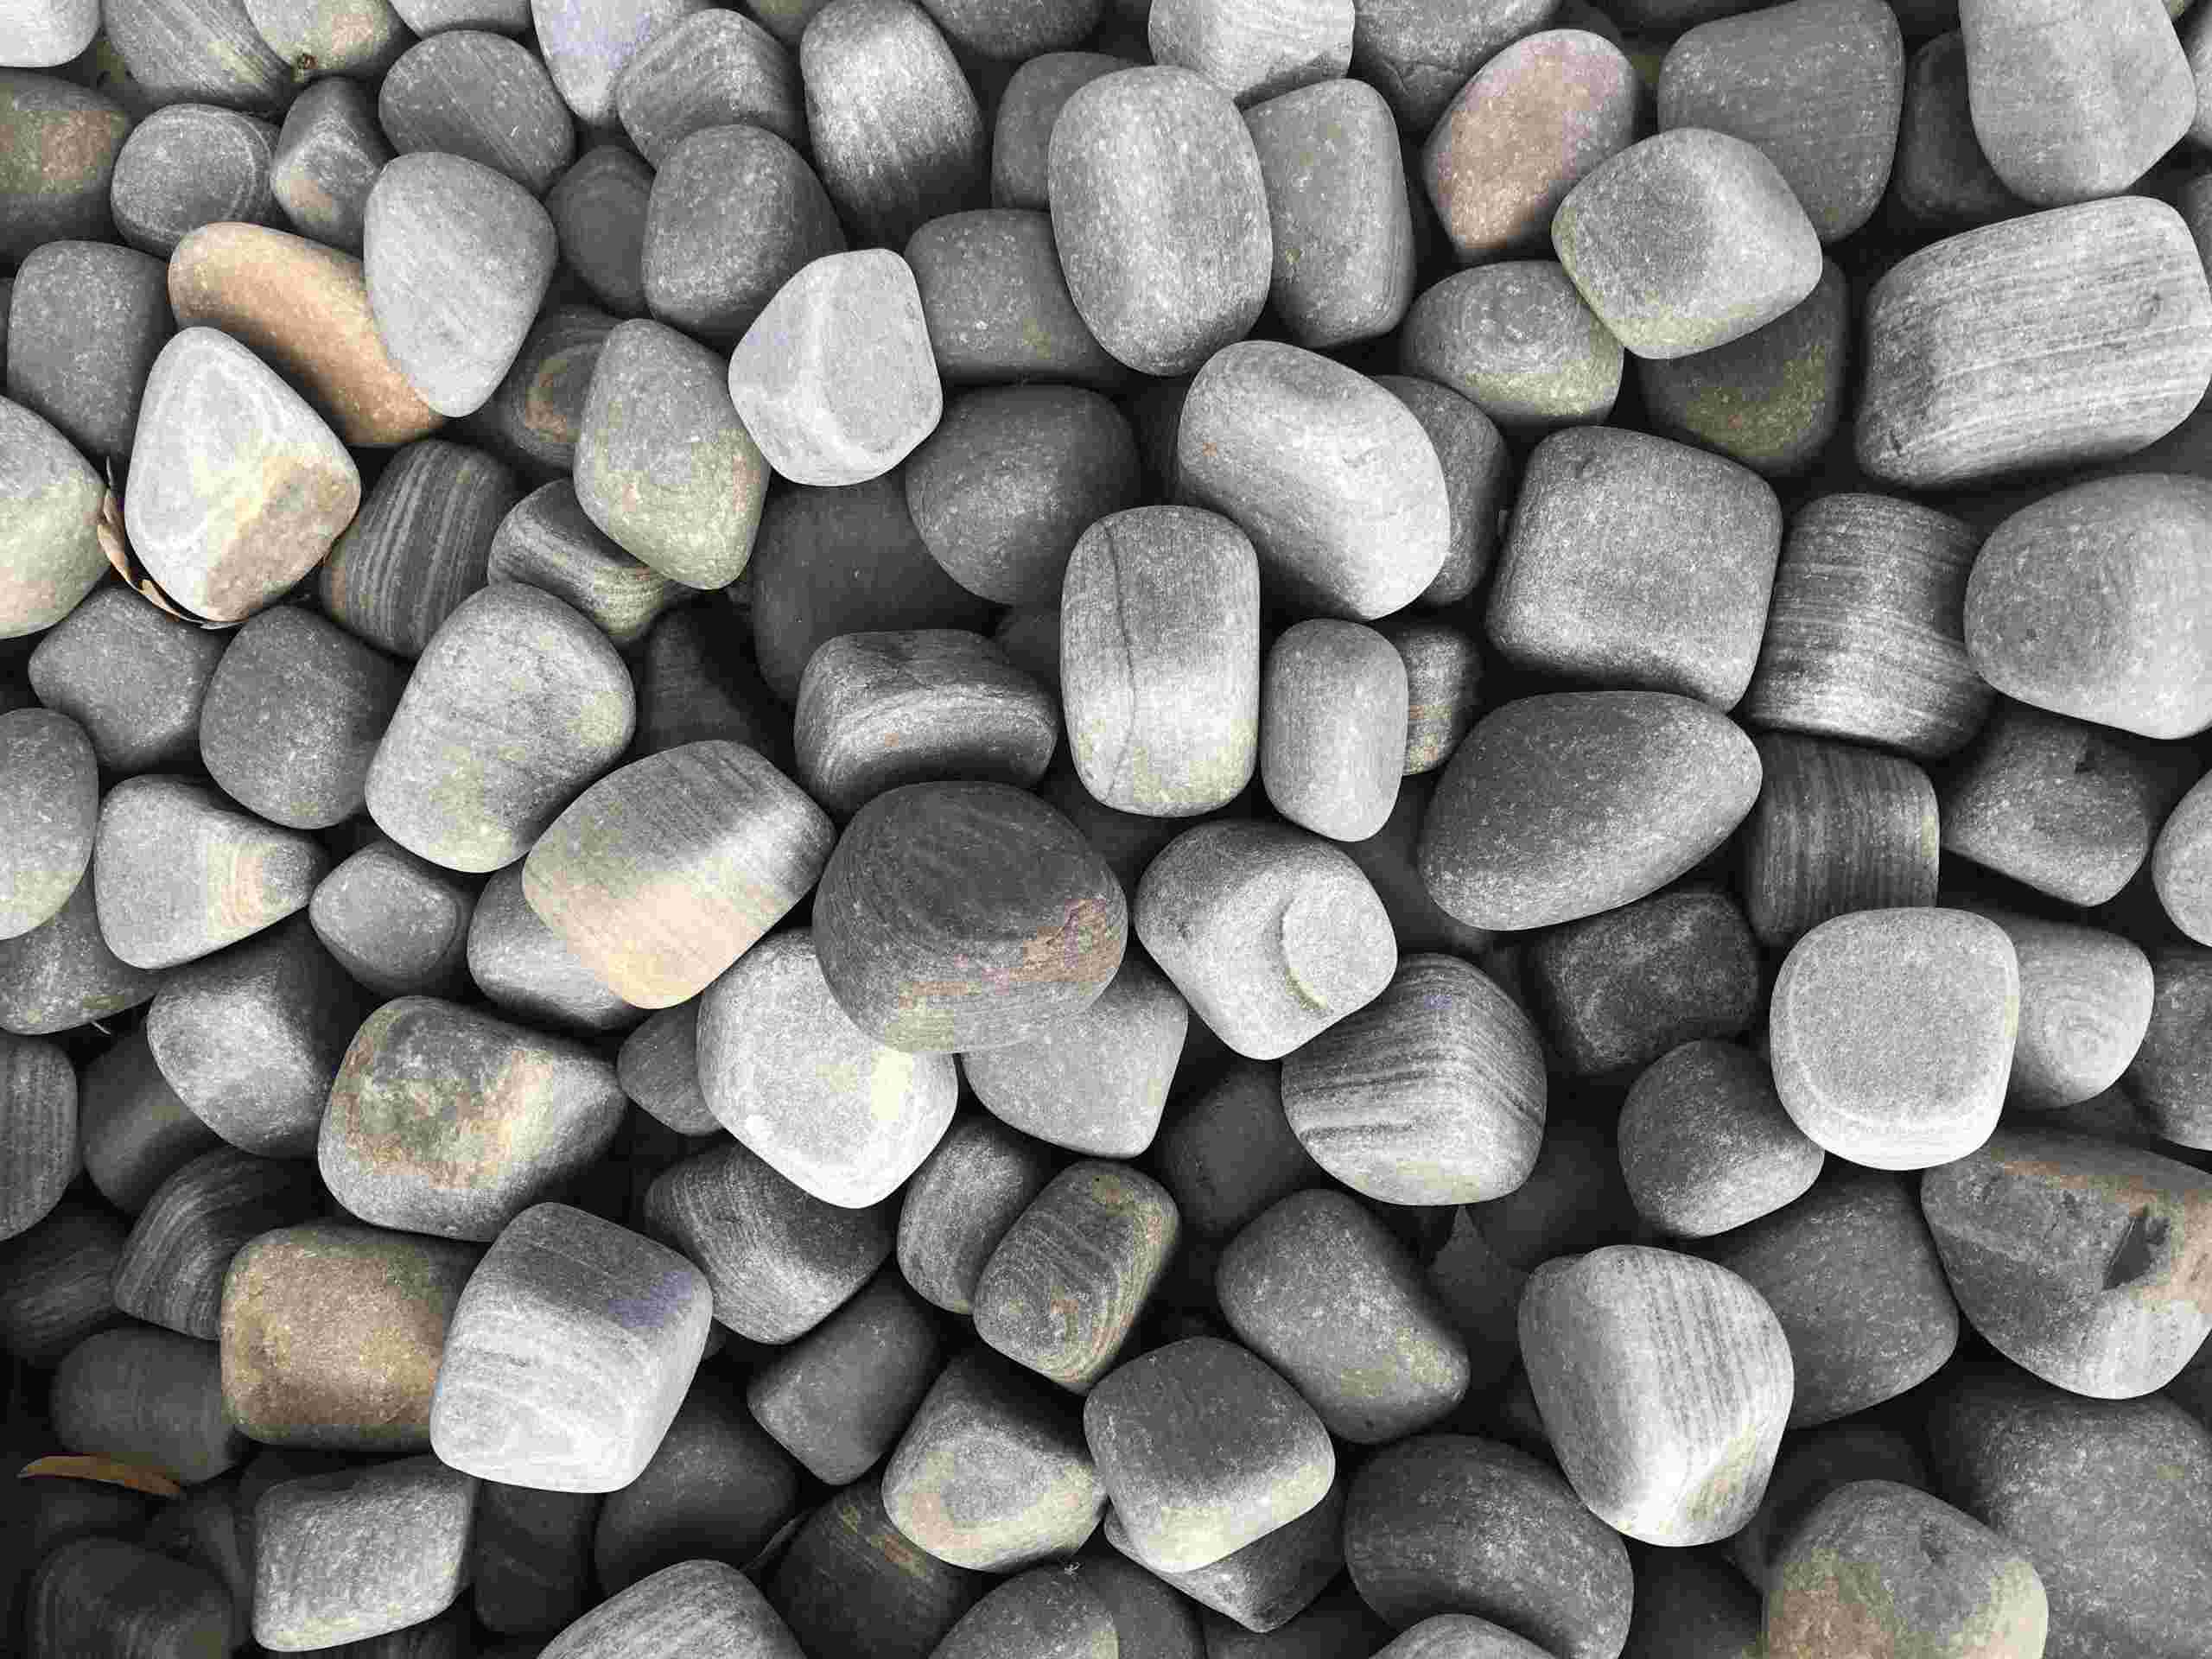 https://www.foras.co.uk/app/uploads/2020/05/Shark-Sandstone-Pebbles-scaled.jpg